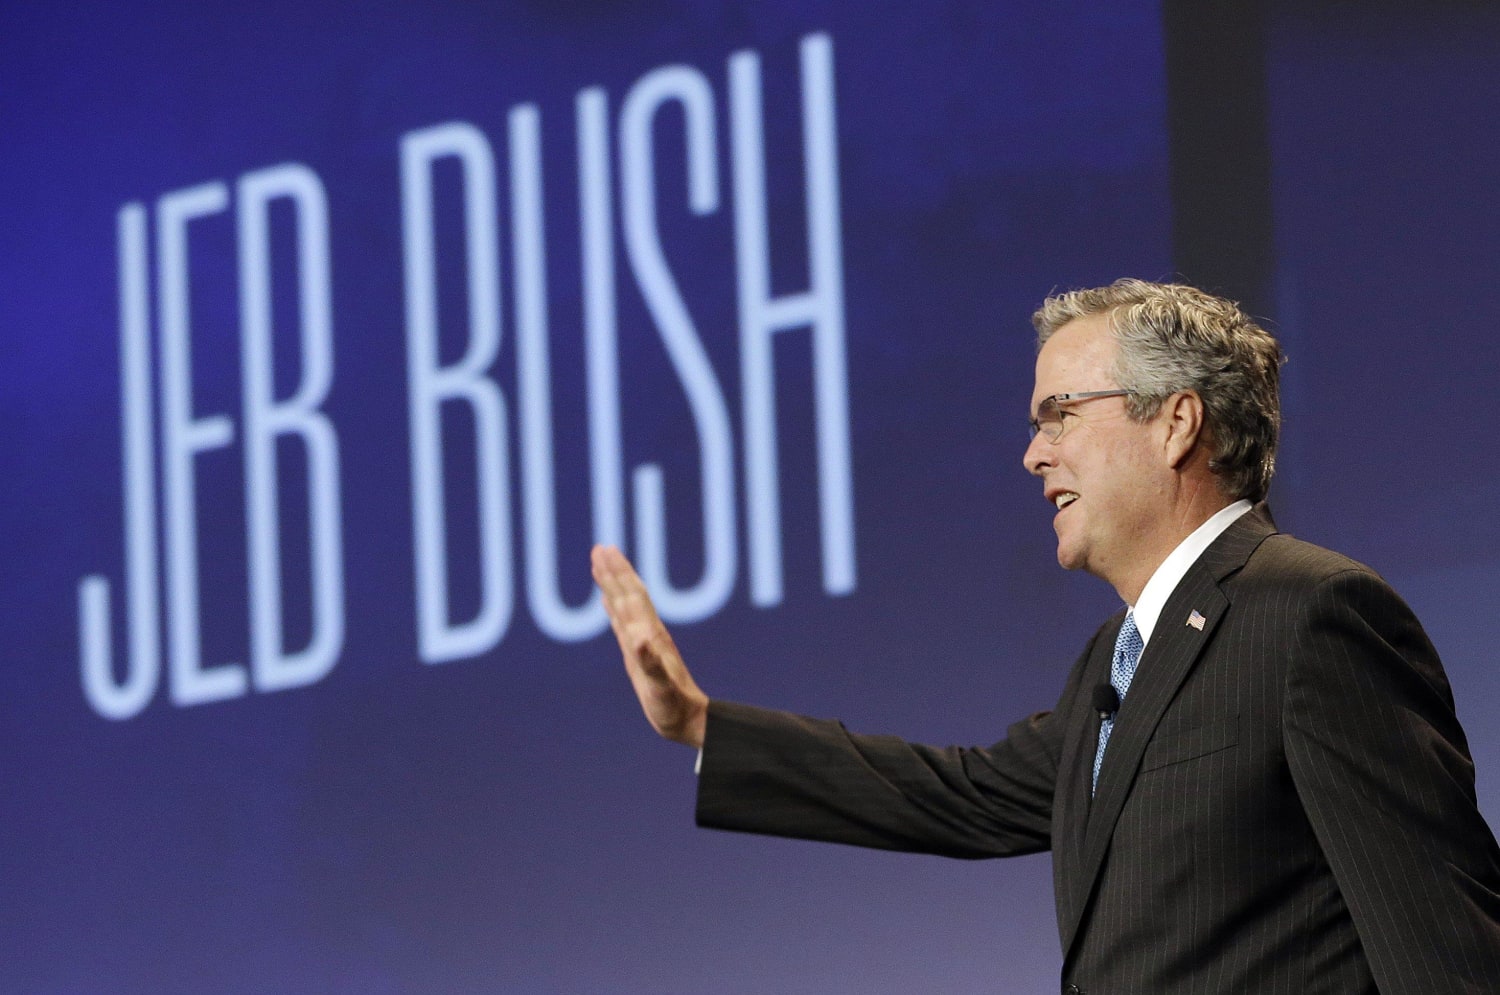 Major Conservative Group Calls Bush Unelectable - NBC News.